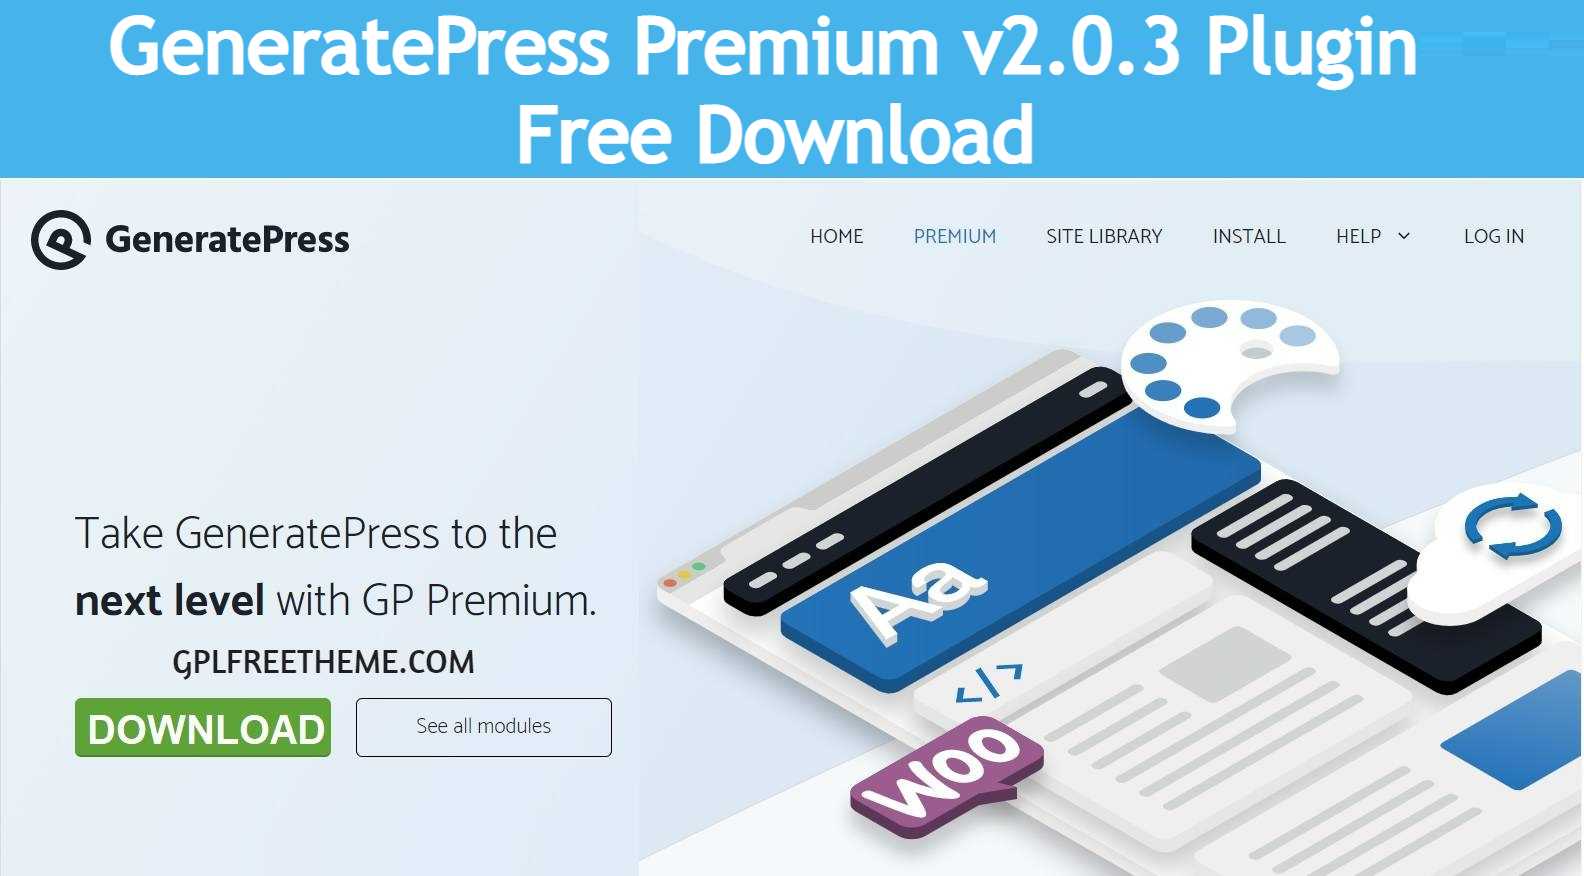 GP Premium v2.0.3 Plugin Free Download [Activated]